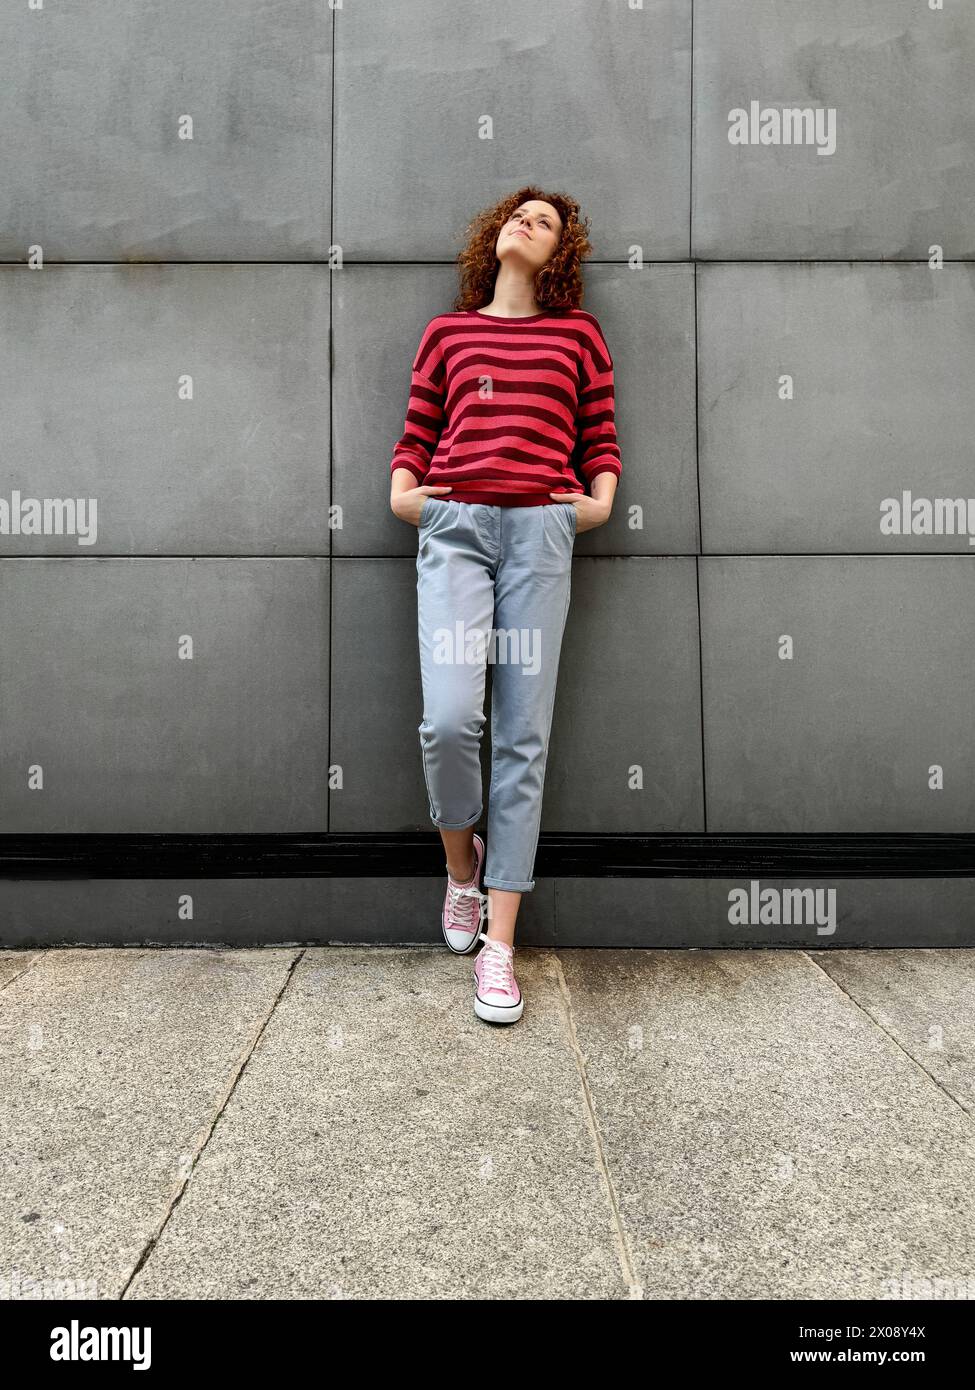 Una giovane donna rossa dai capelli ricci con un pullover a righe e pantaloni grigi si appoggia a una parete grigia testurizzata, guardando con attenzione Foto Stock